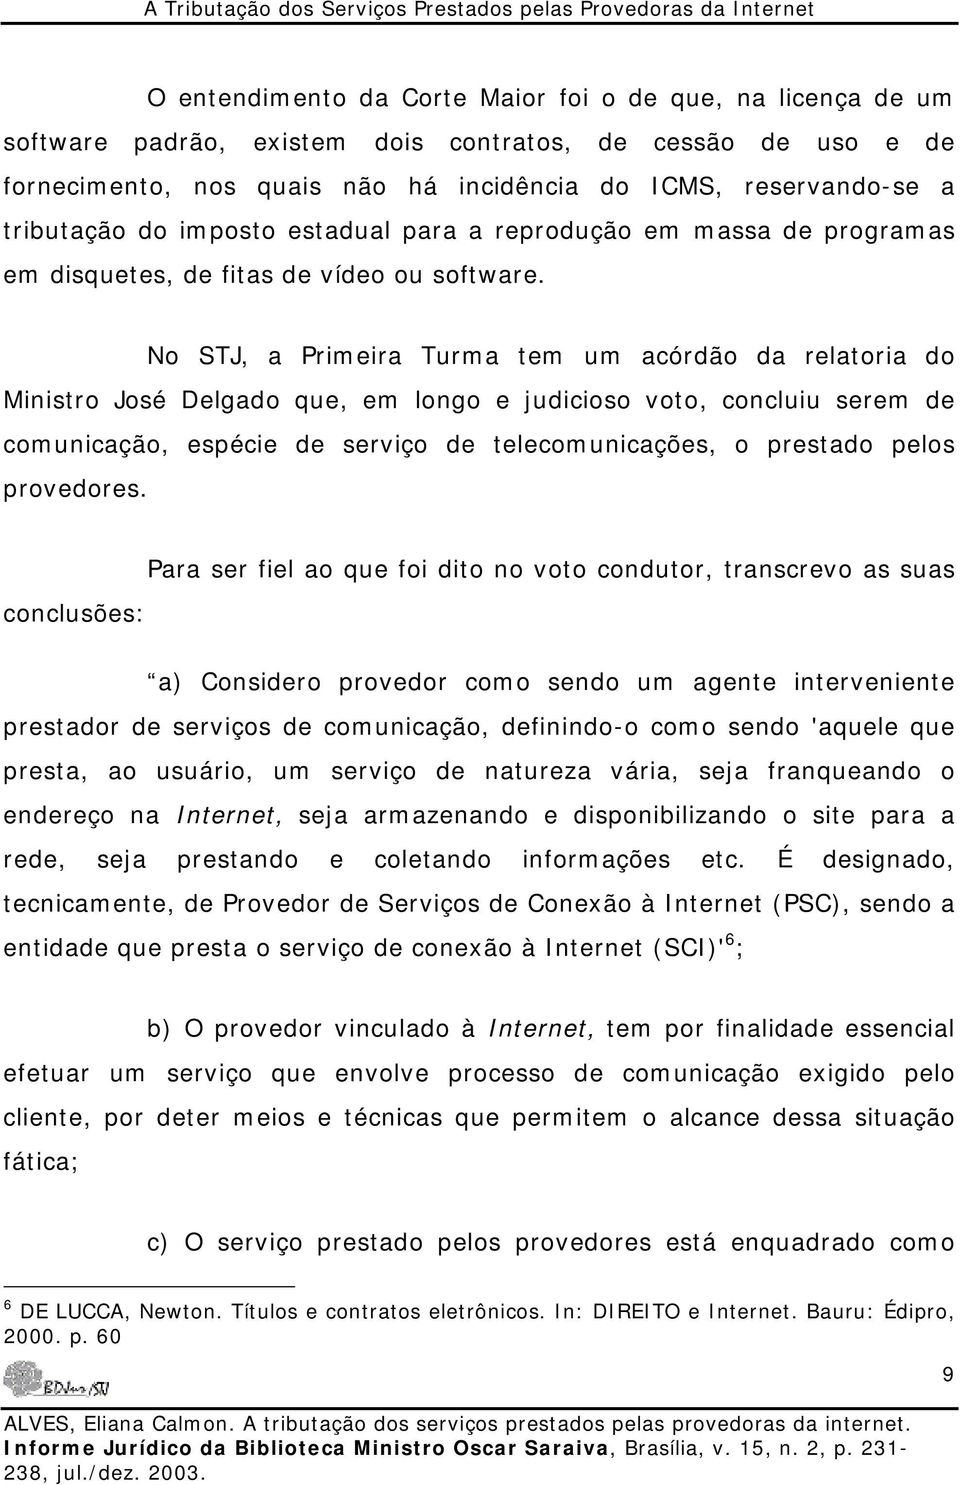 No STJ, a Primeira Turma tem um acórdão da relatoria do Ministro José Delgado que, em longo e judicioso voto, concluiu serem de comunicação, espécie de serviço de telecomunicações, o prestado pelos